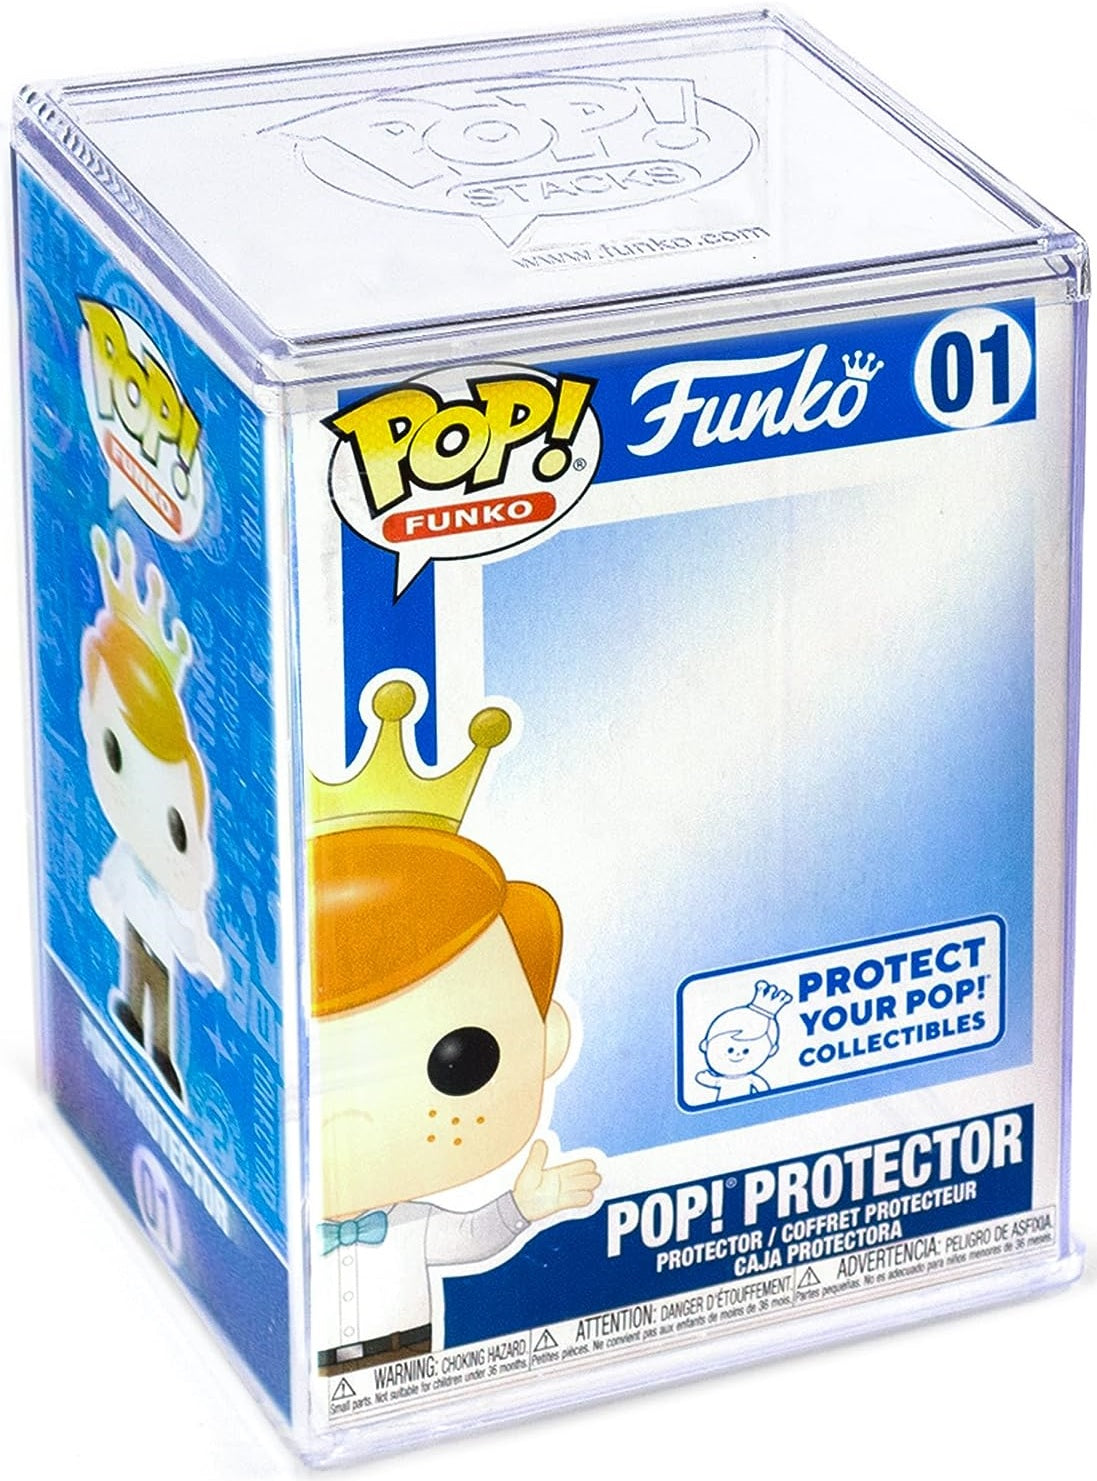 Funko Pop! Protectors